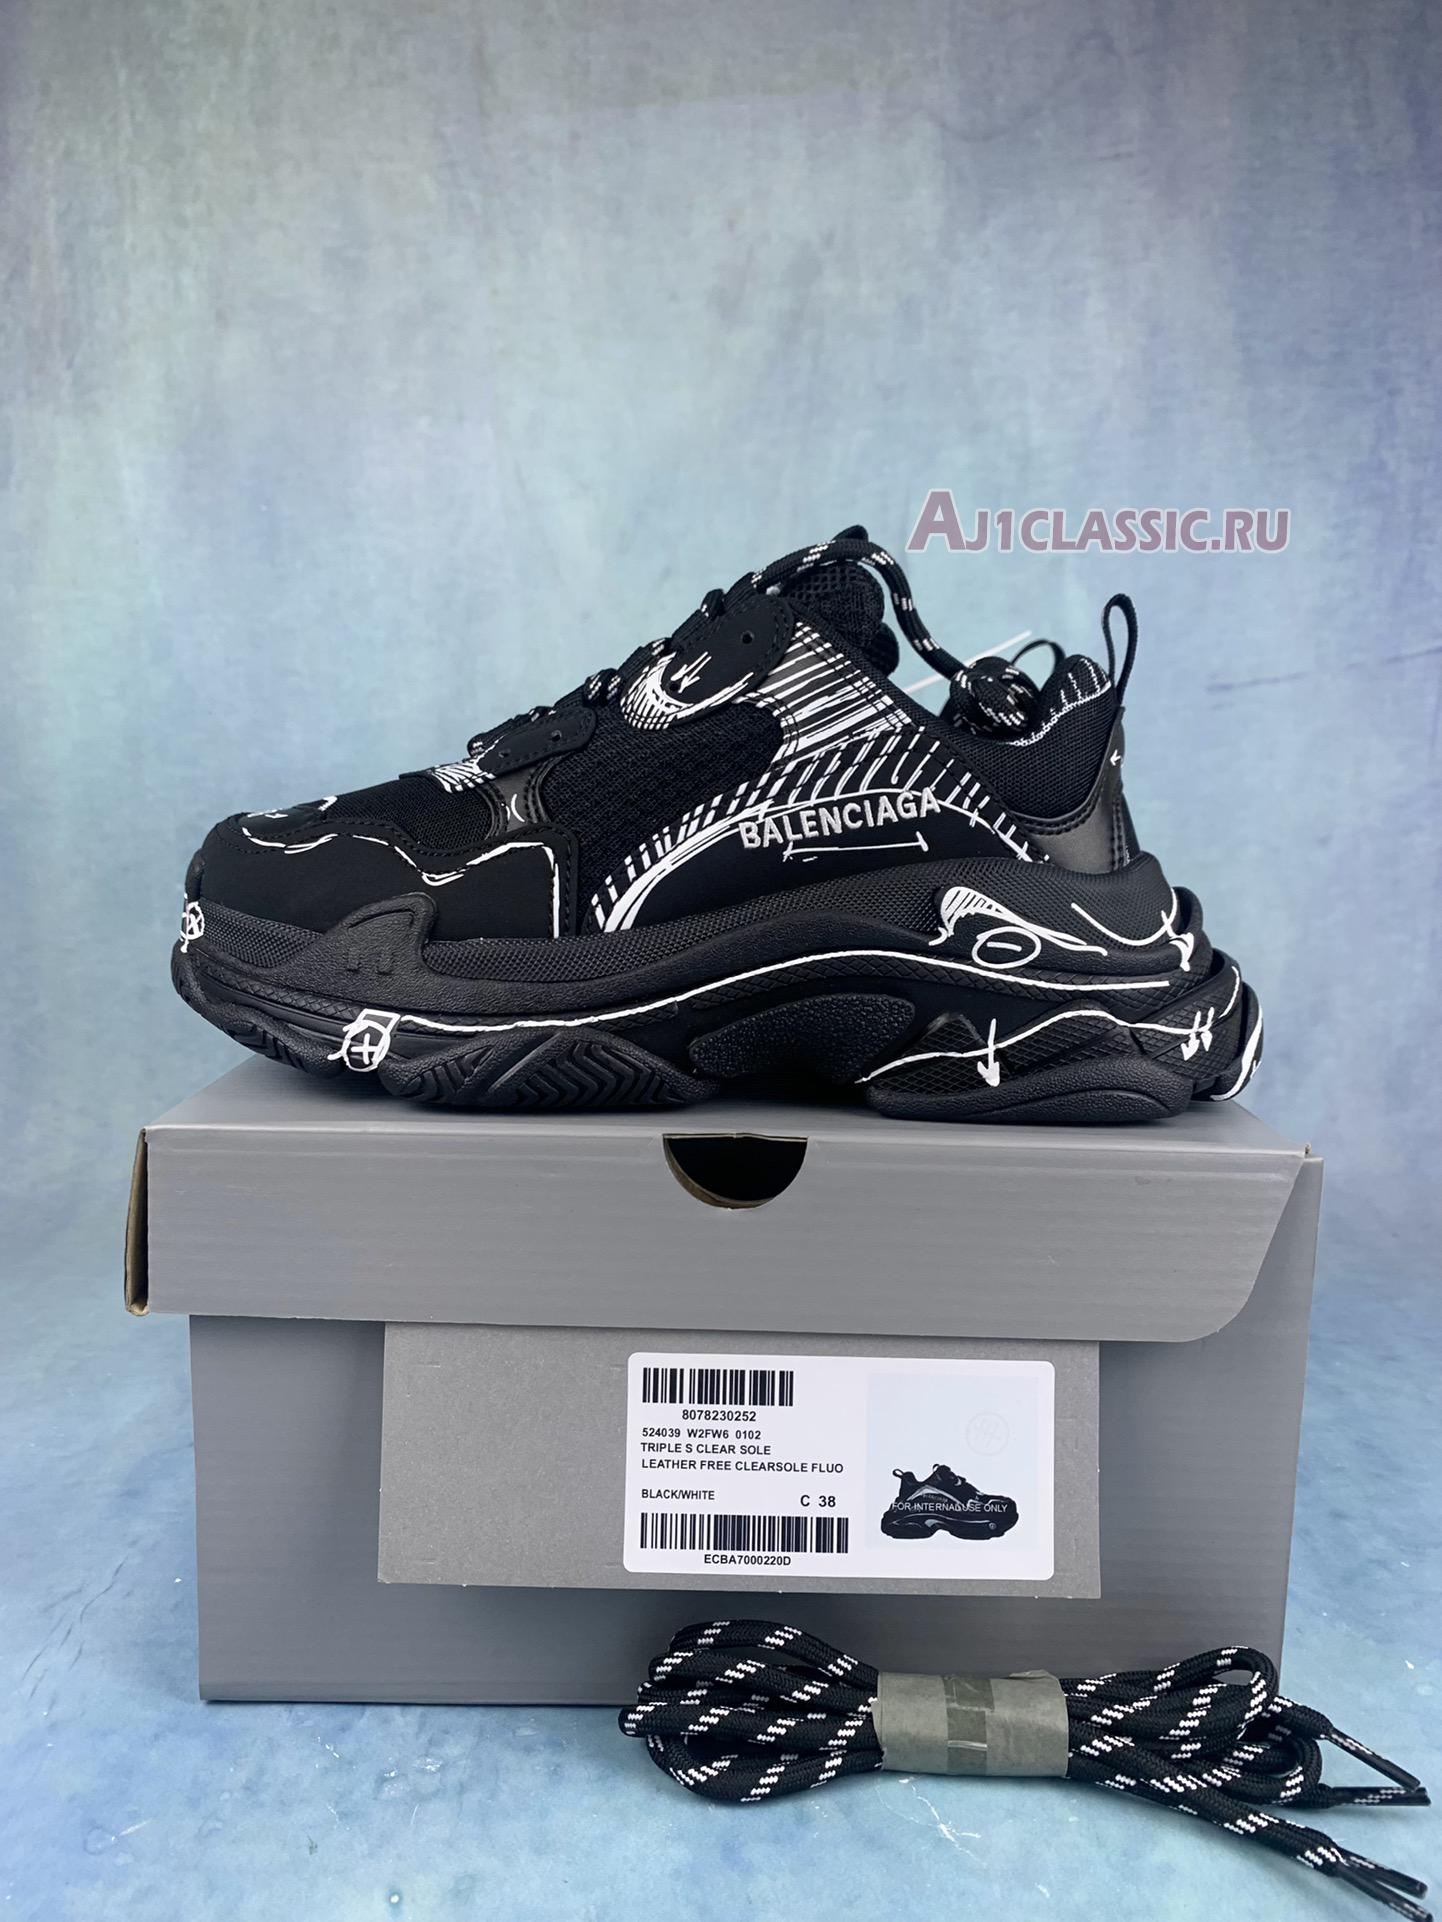 Balenciaga Triple S Sketch-Print Sneakers "Black" 536737 W3SRB 1090